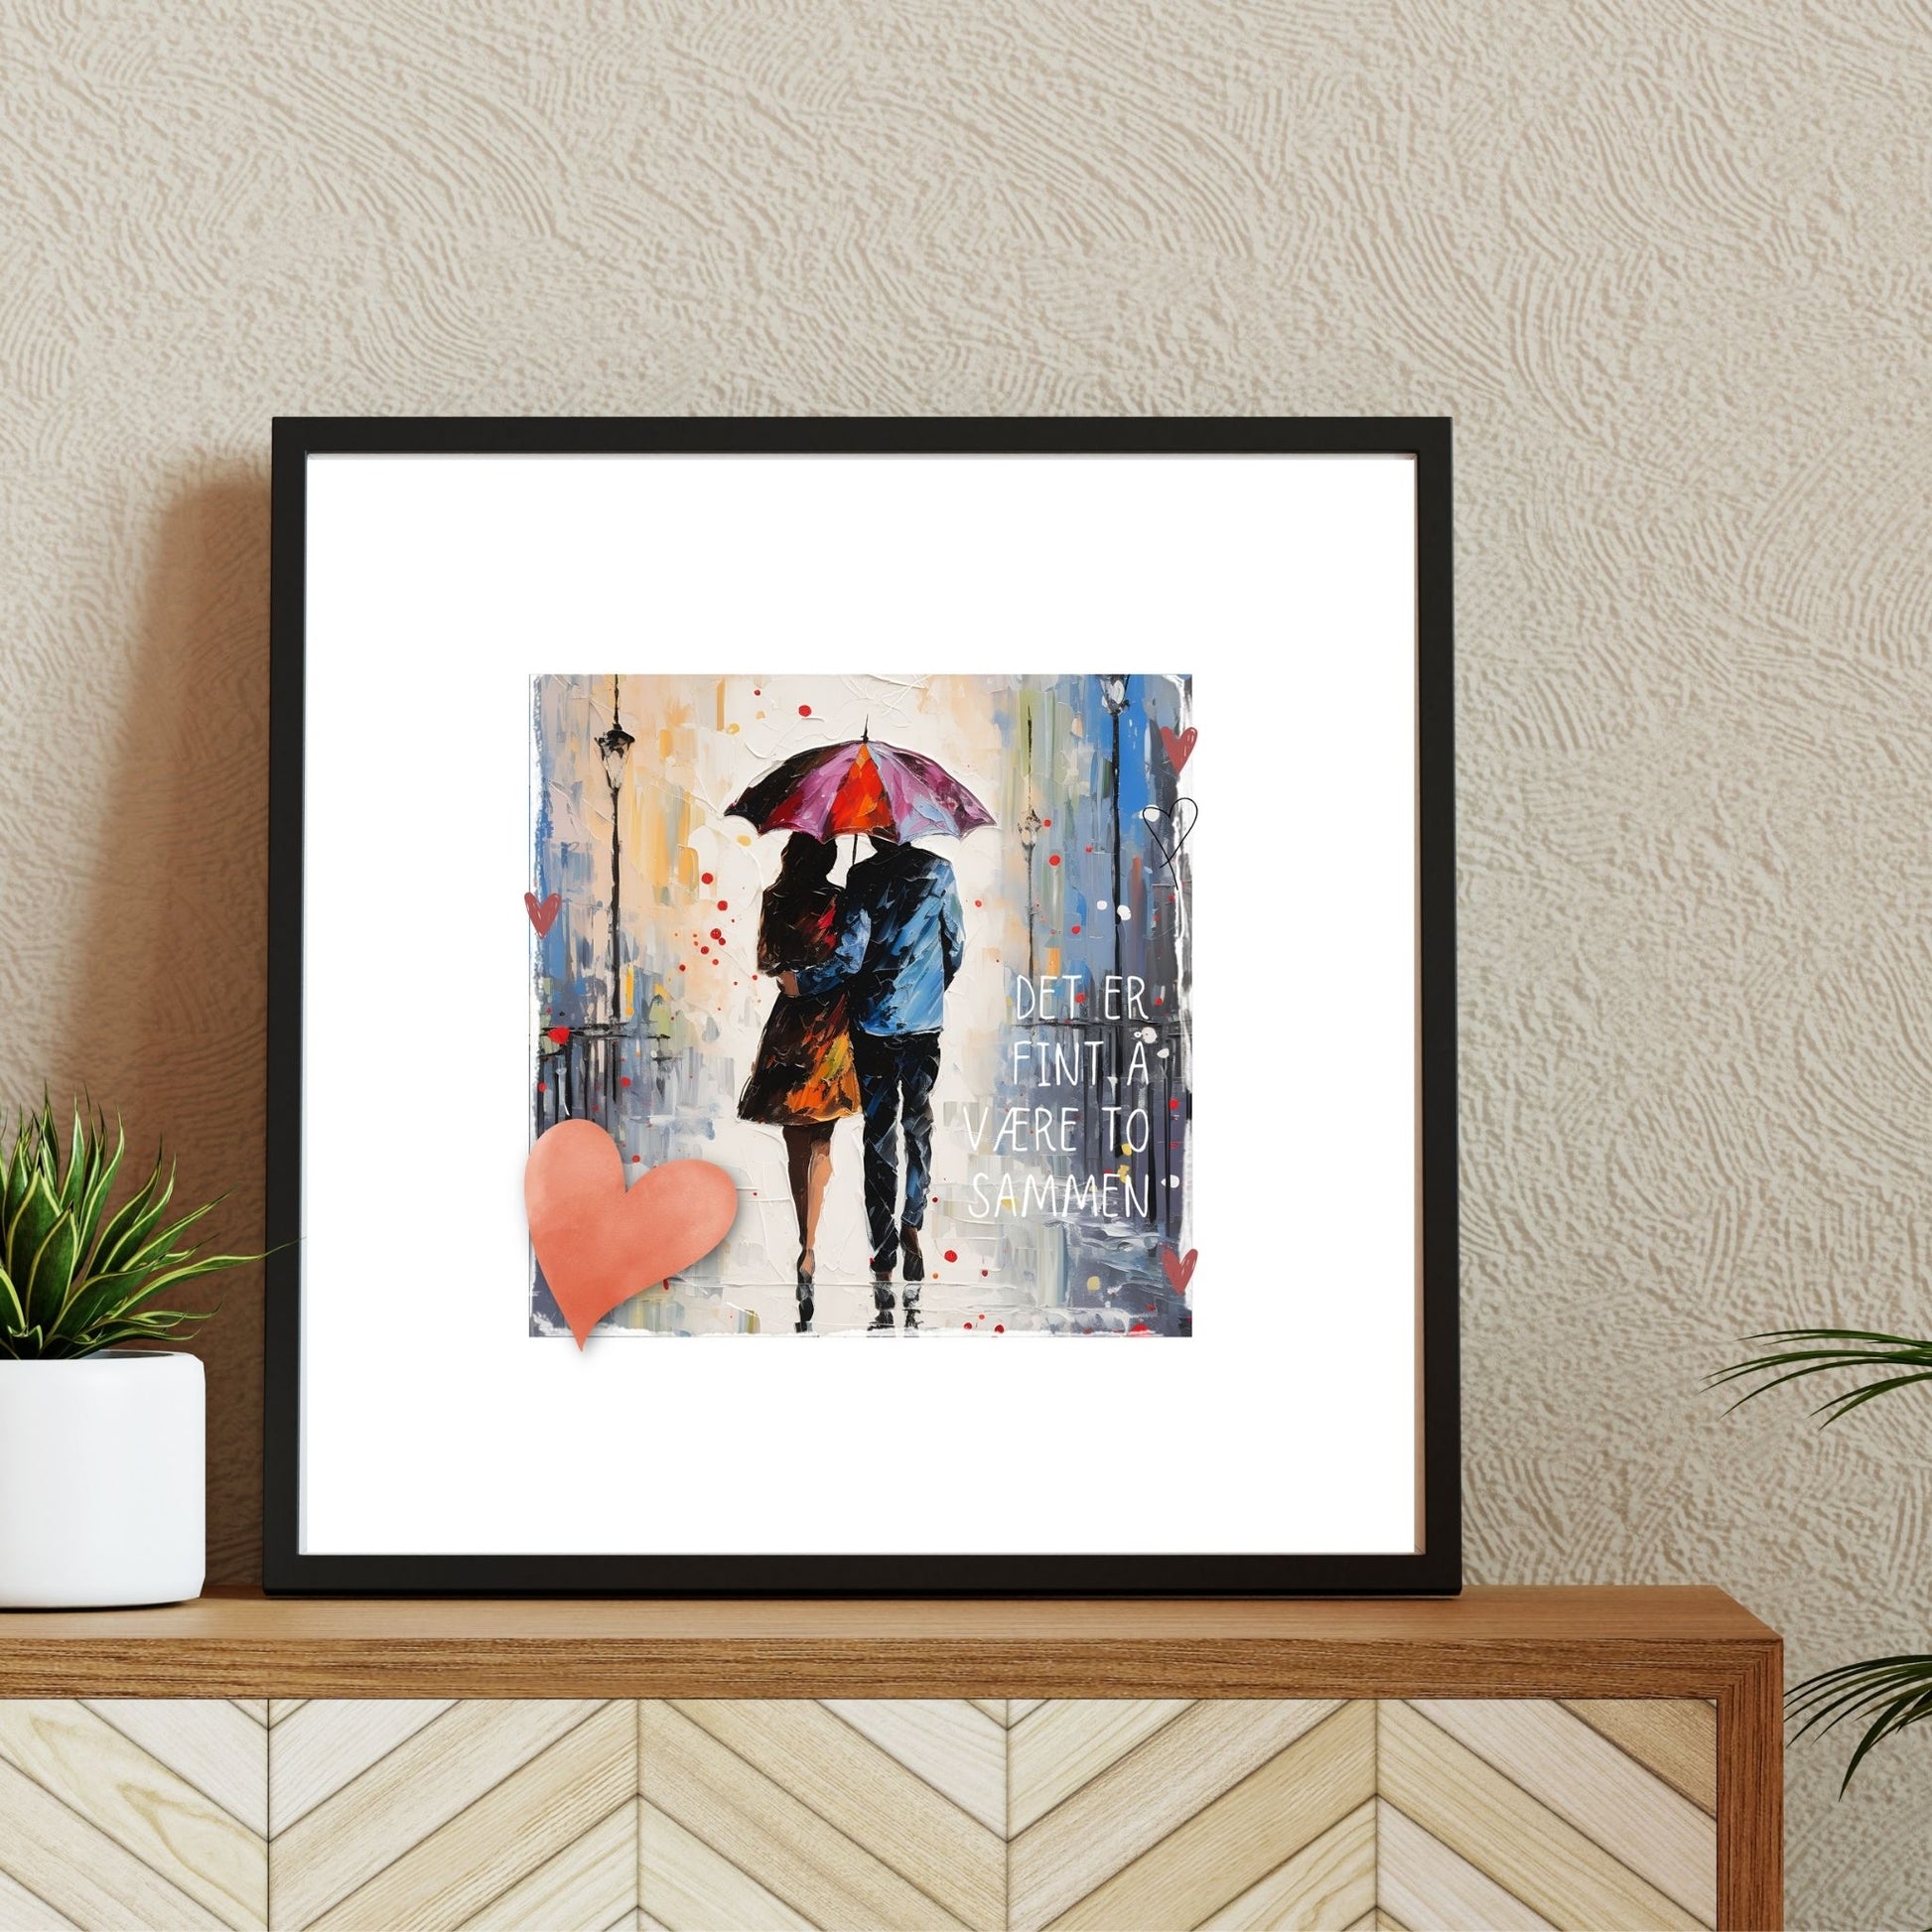 Plakat med rosa hjerte og tekst "Det er fint å være to sammen" - og et motiv med et kjærestepar som går under en rød paraply. Bildet har en hvit kant på 4 cm. Illustrasjon viser plakat i ramme.